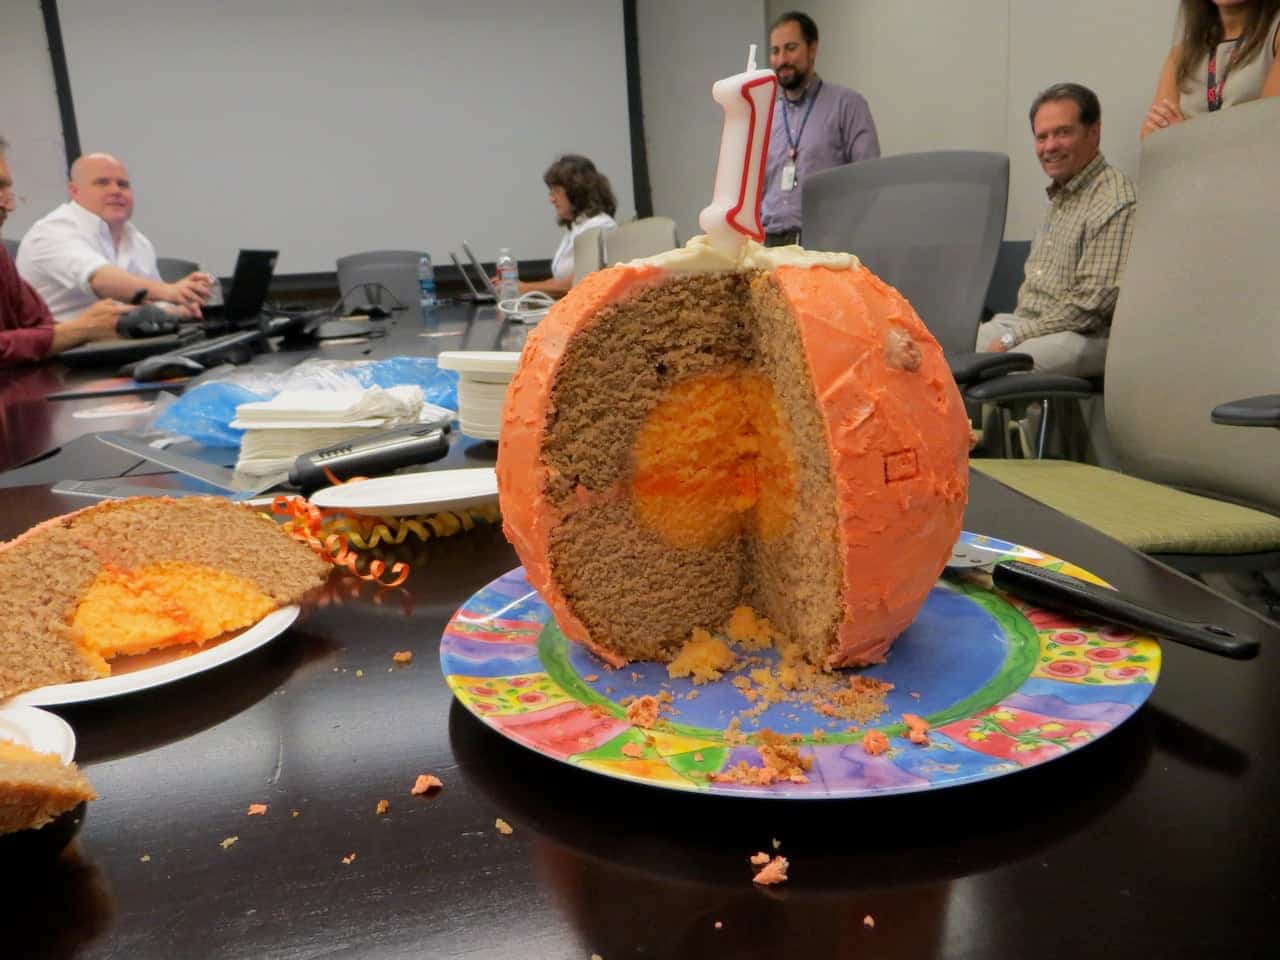 كعكة على شكل كوكب المريخ مع شمعة عيد ميلاد على شكل رقم 1 في الأعلى.